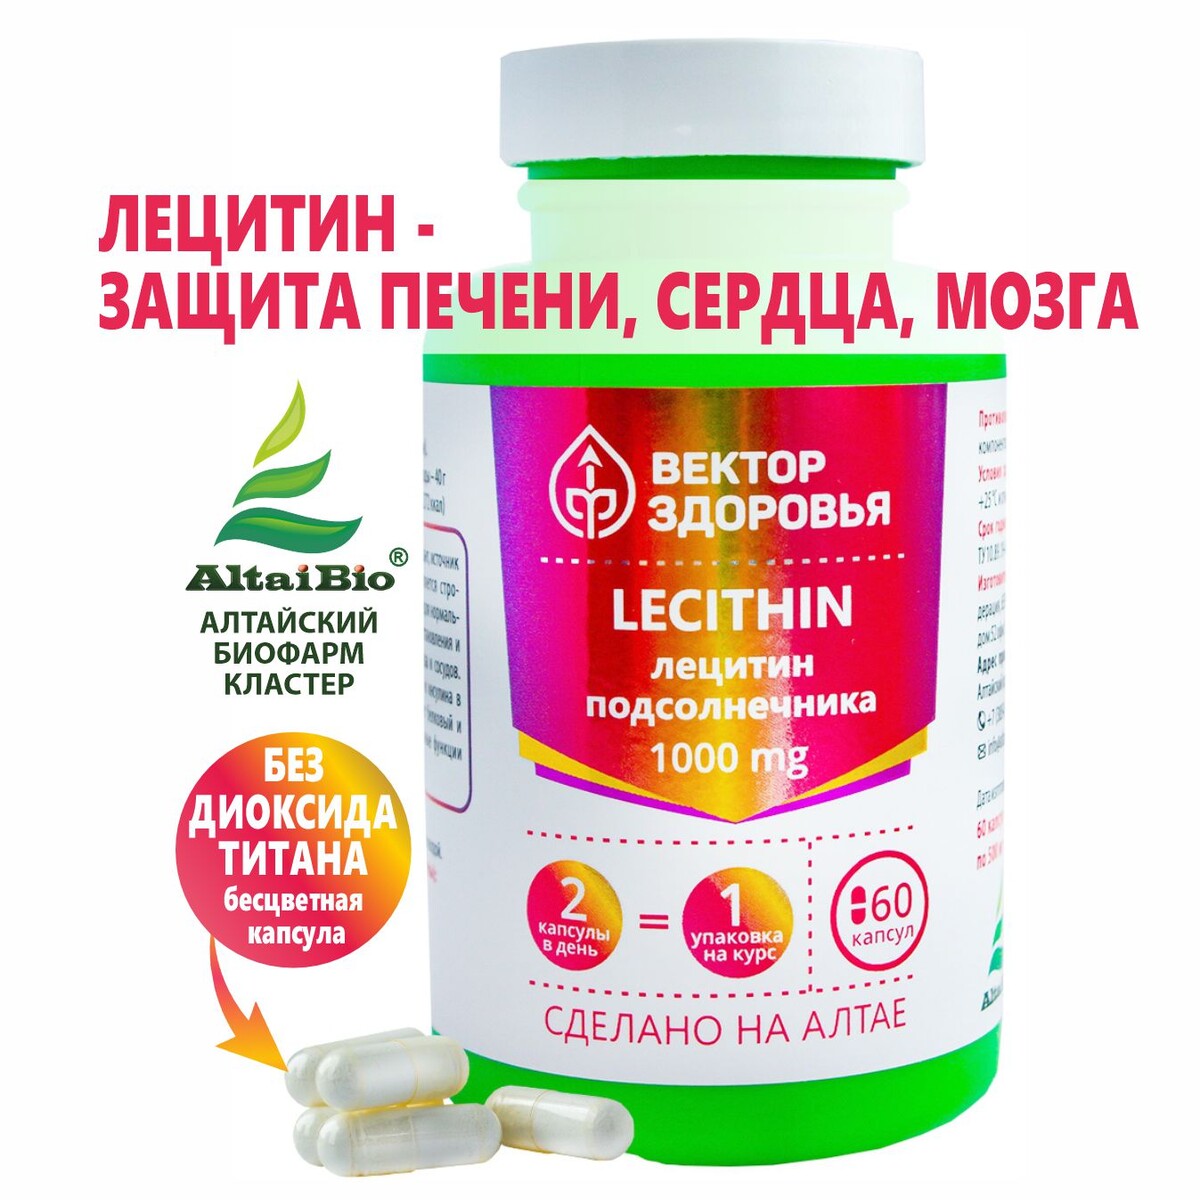 Комплекс lecithin лецитин подсолнечника солгар комплекс основных аминокислот капс 30